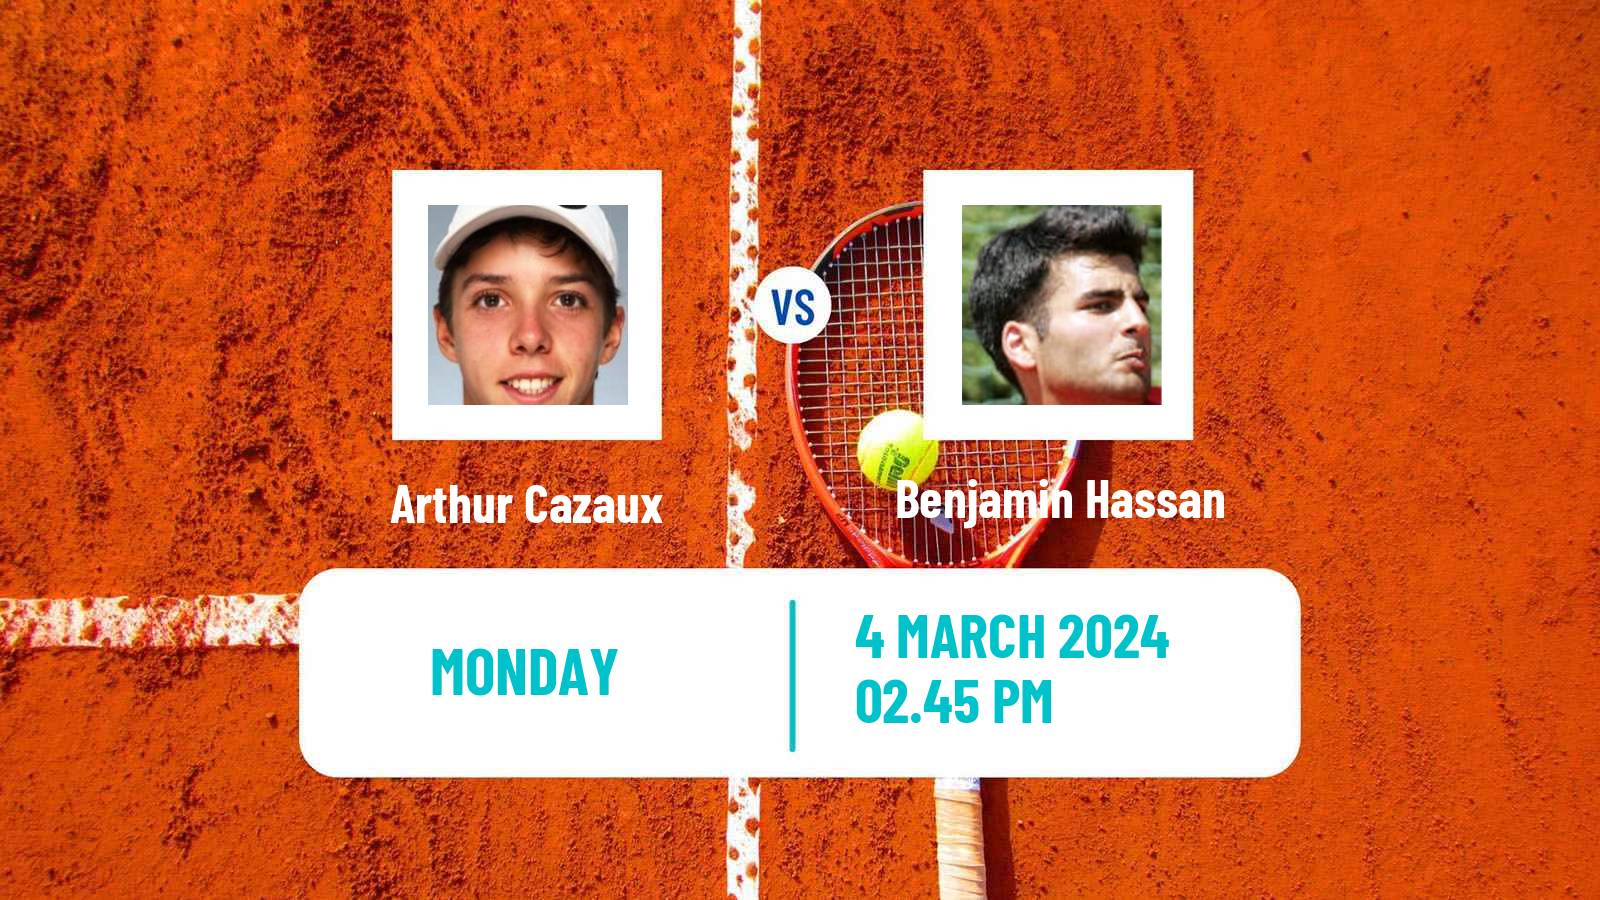 Tennis ATP Indian Wells Arthur Cazaux - Benjamin Hassan